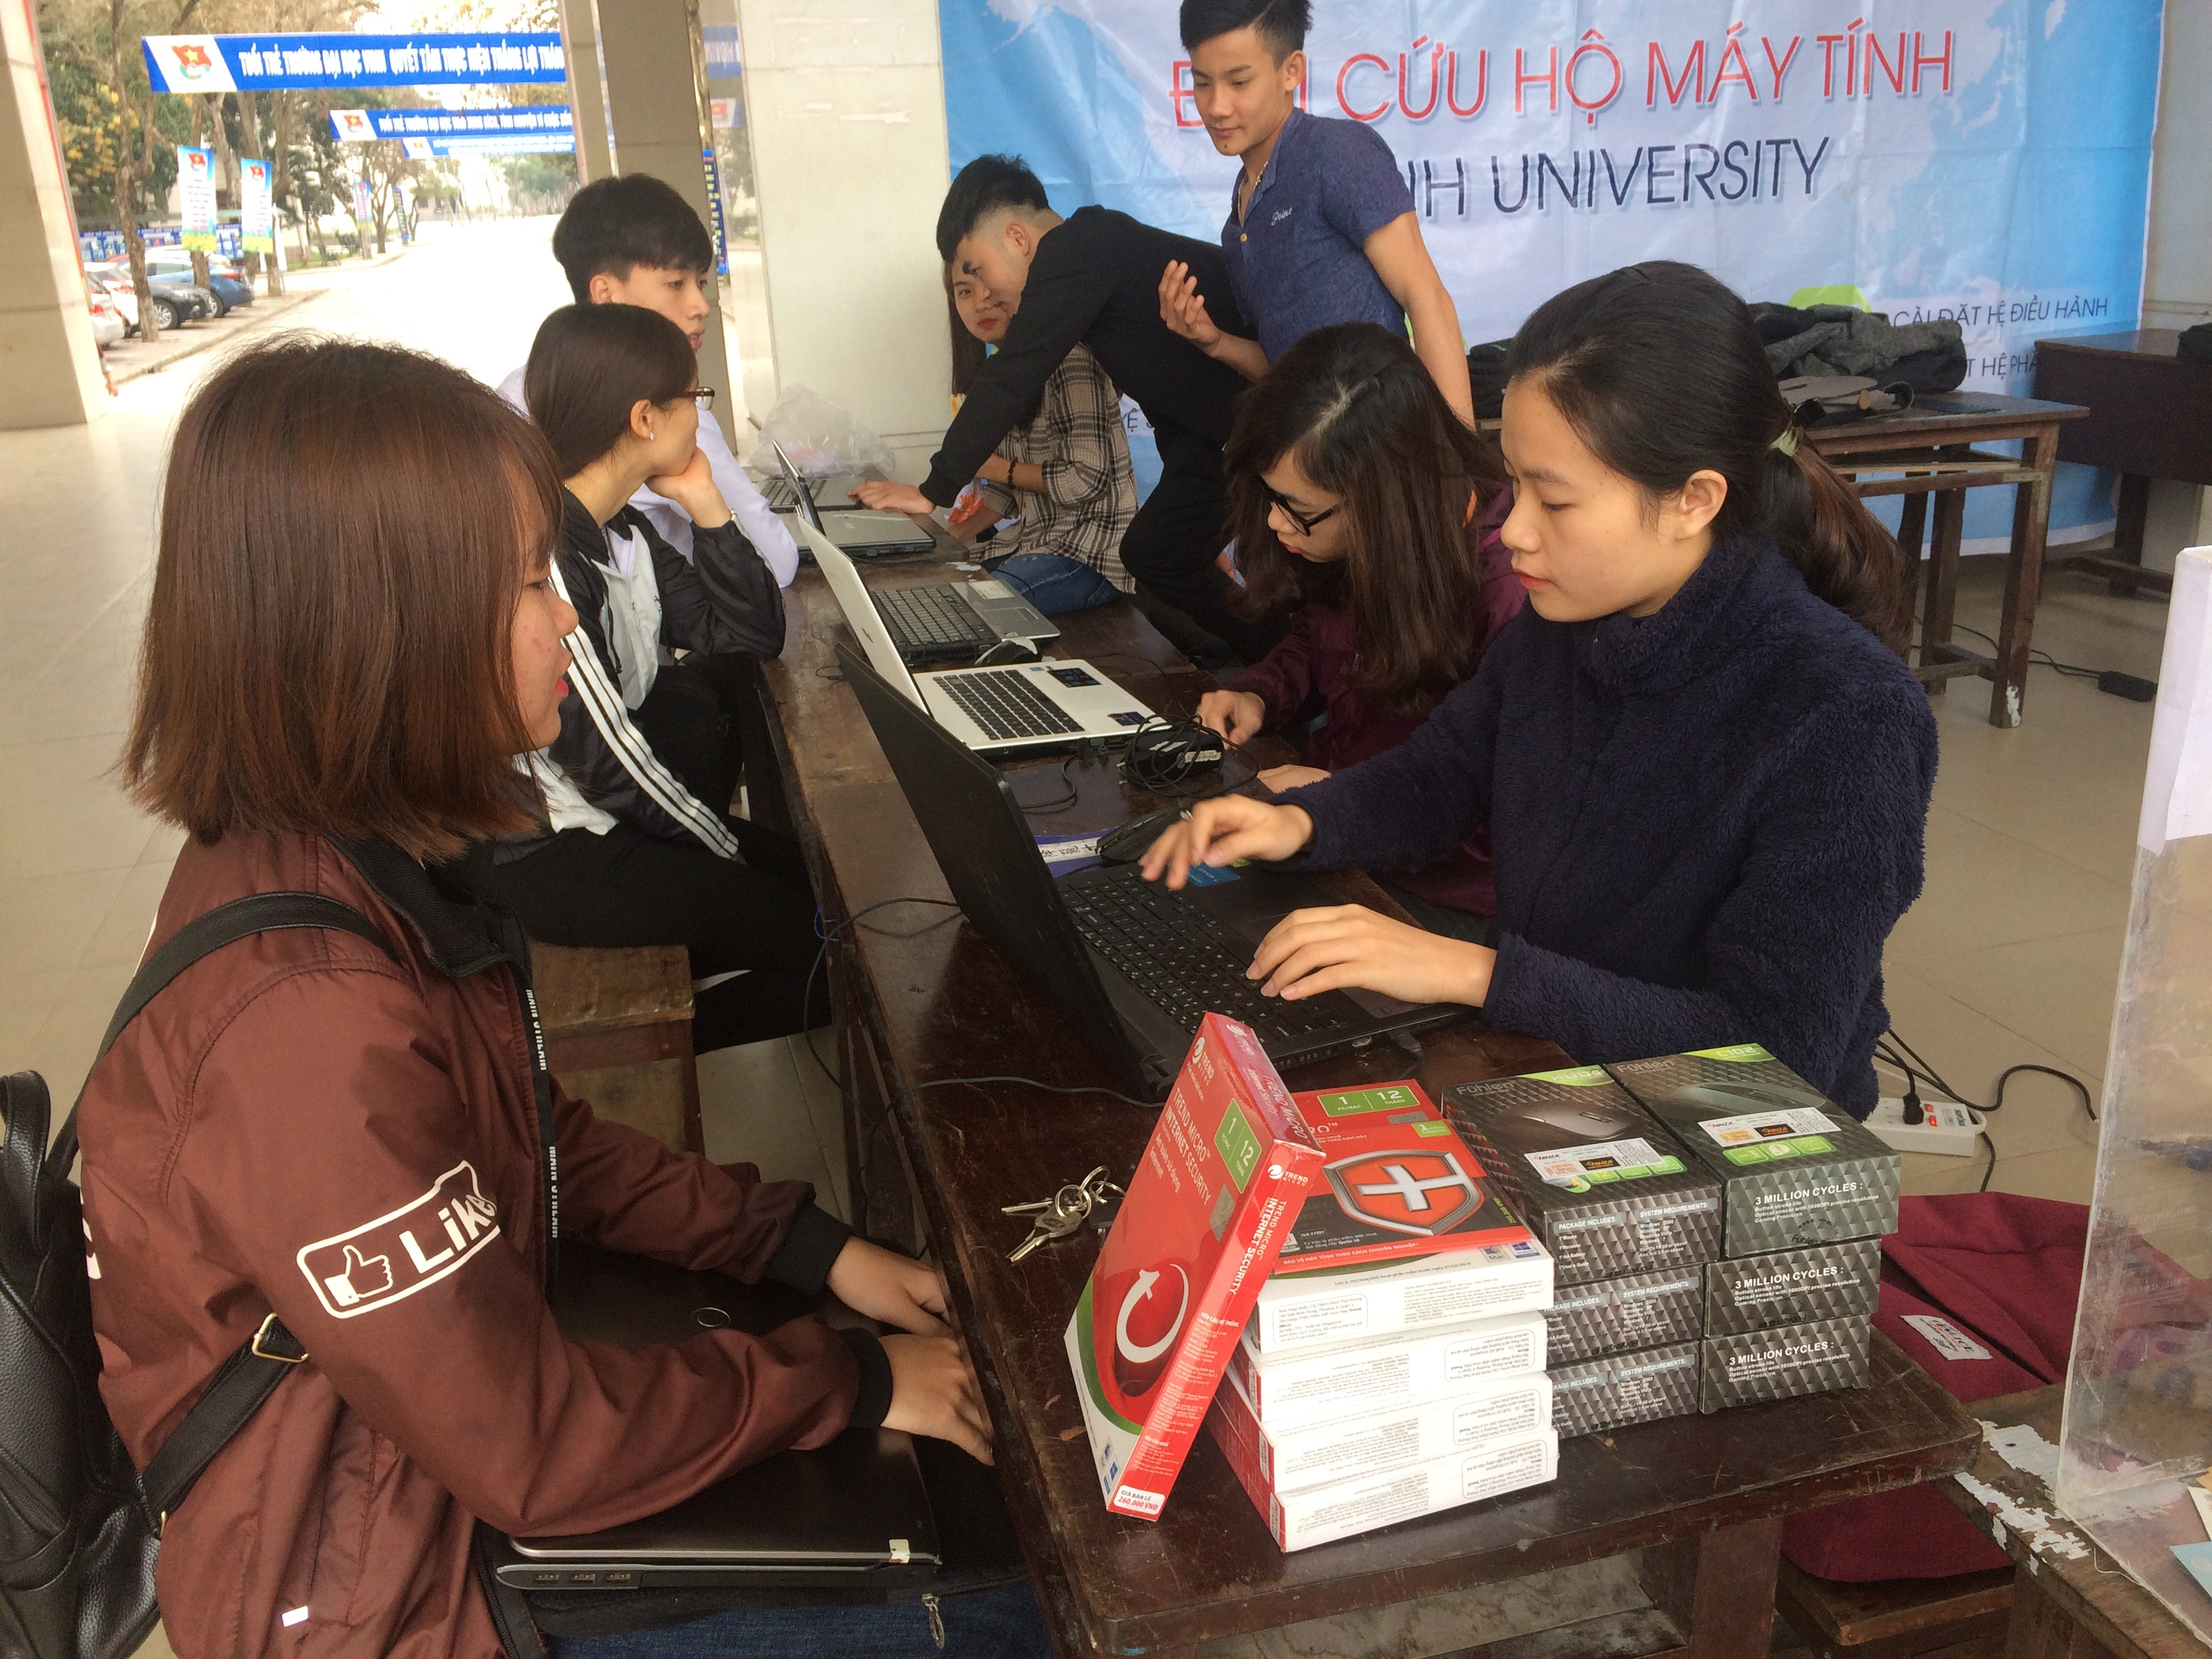 Với phương châm: “Cứu hộ máy tính, lập trình yêu thương”, đội thành lập nhằm gây quỹ để giúp đỡ các hoàn cảnh khó khăn trên địa bản tỉnh Nghệ An. Ảnh: Thu Hiền